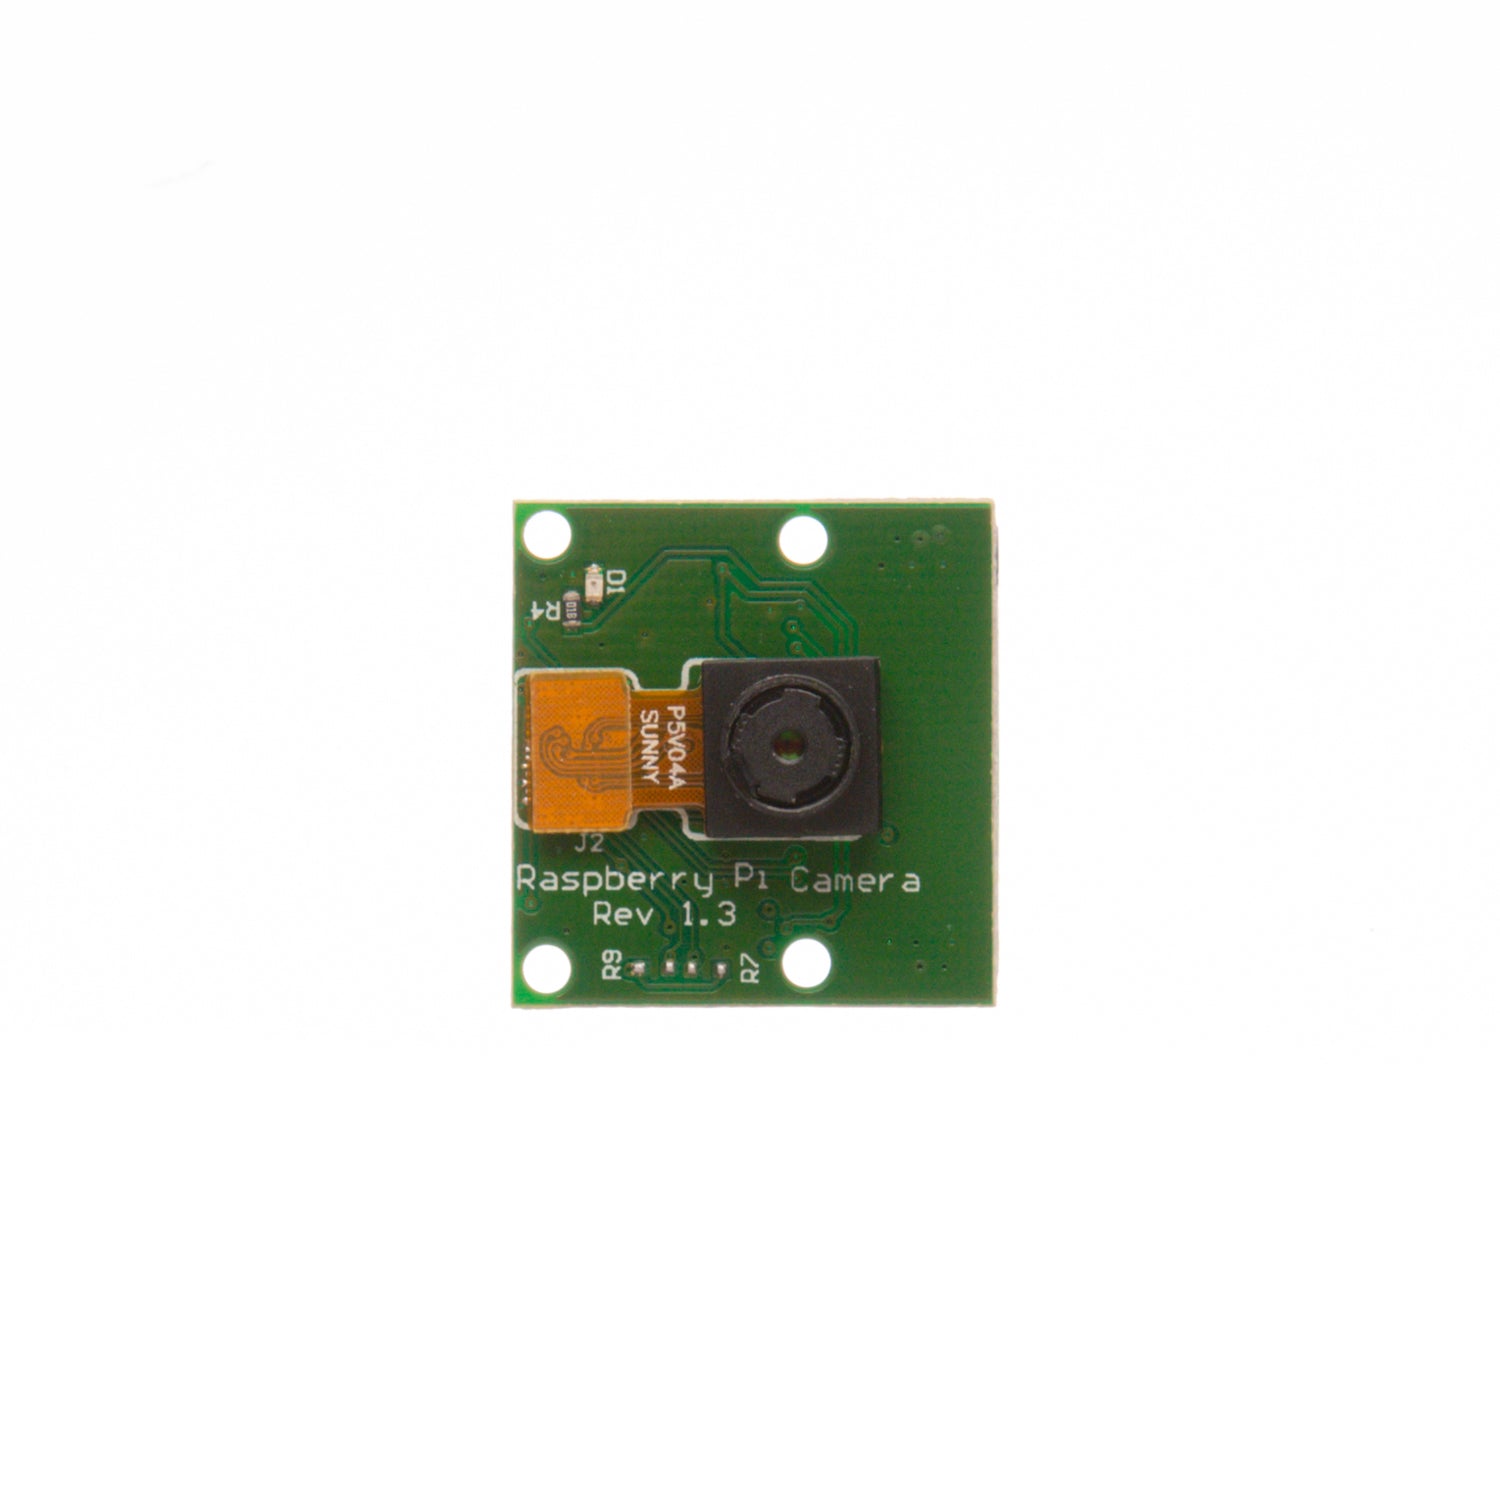 5MP Camera for Raspberry Pi